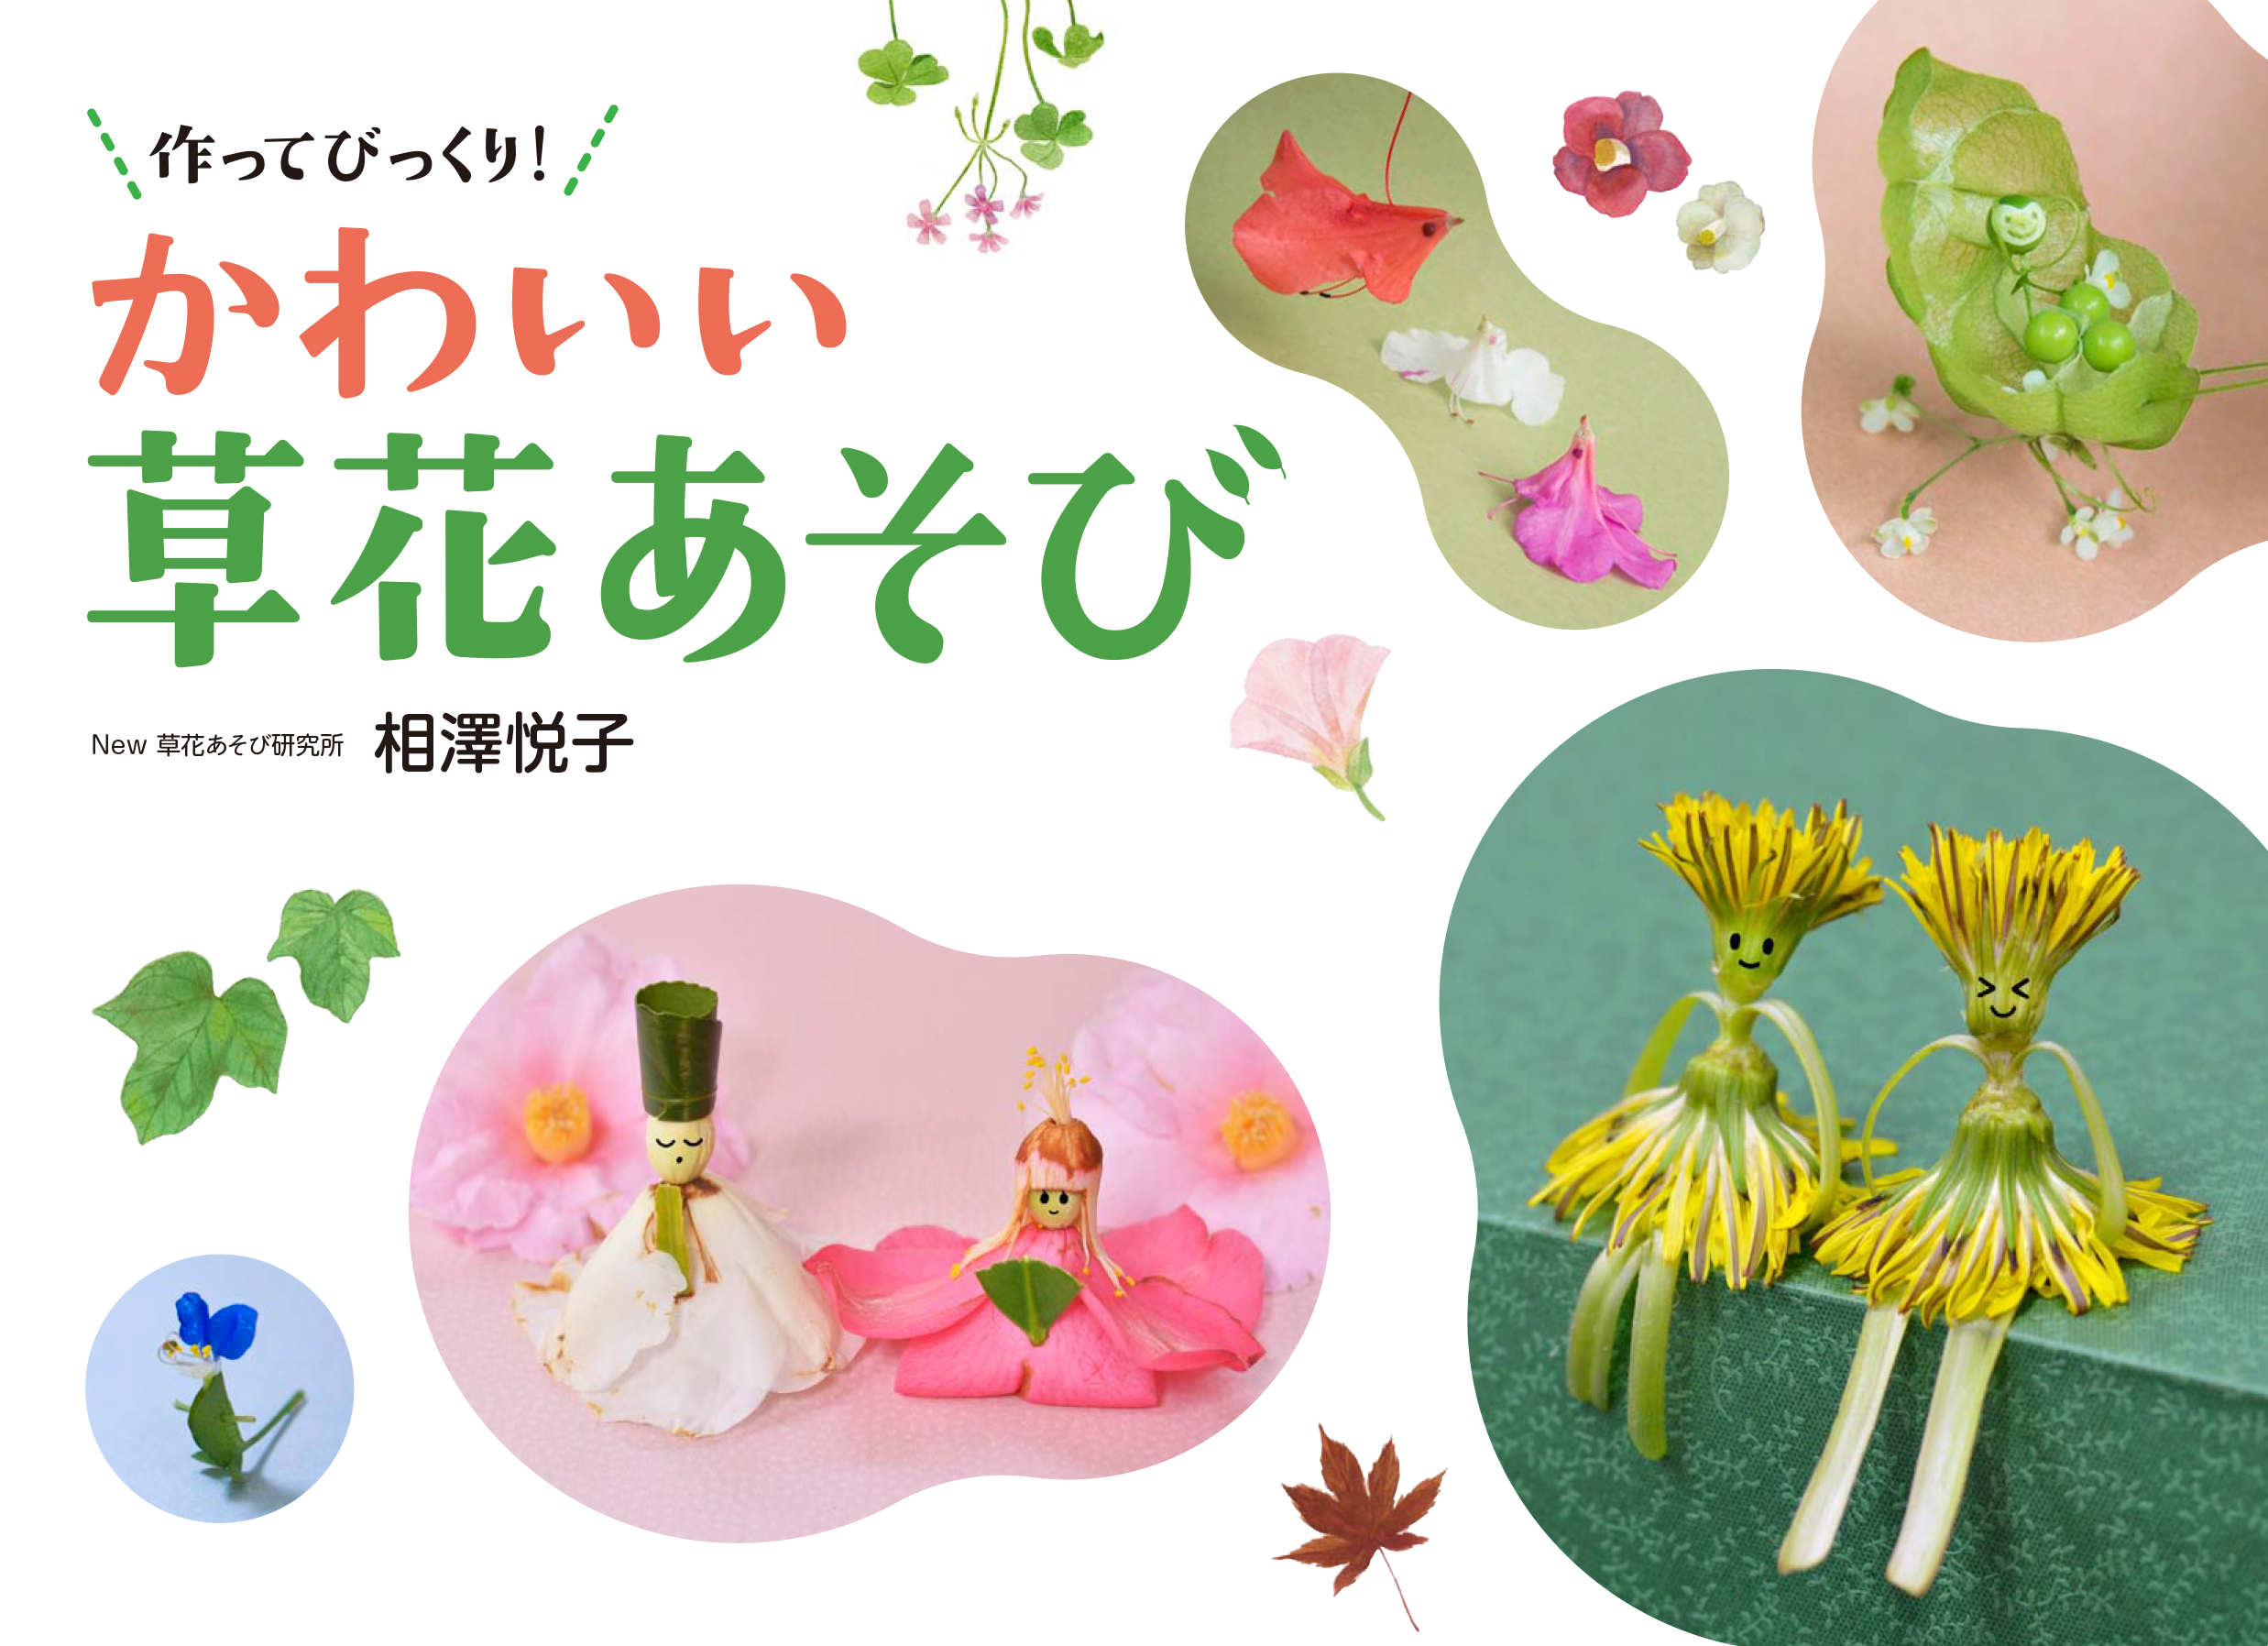 かわいい草花あそび 日本写真企画 フォトコン